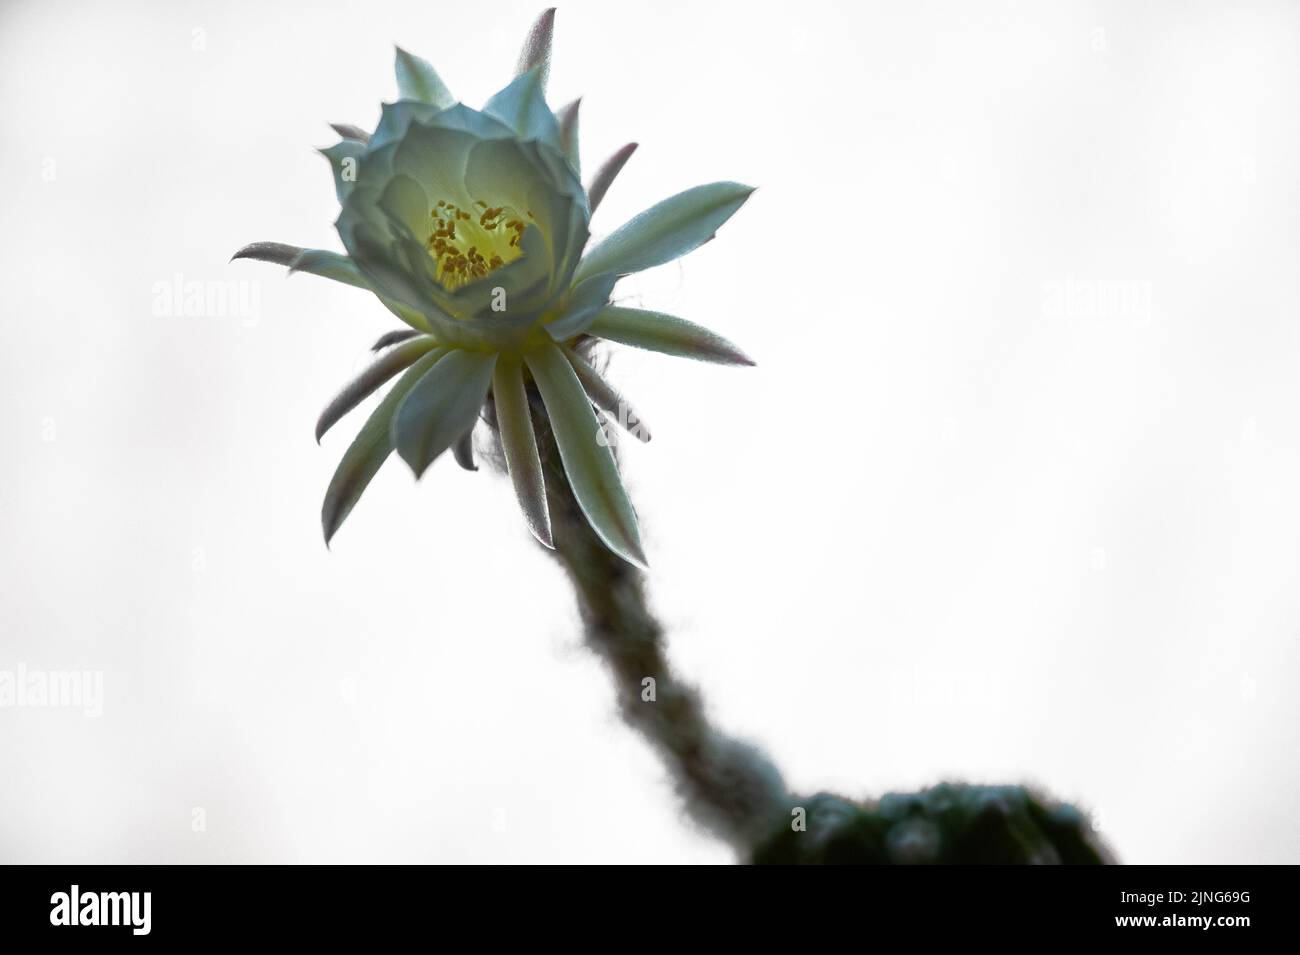 Flowers, Flowering cactus, Echinopsis oxygona hybrid. Stock Photo